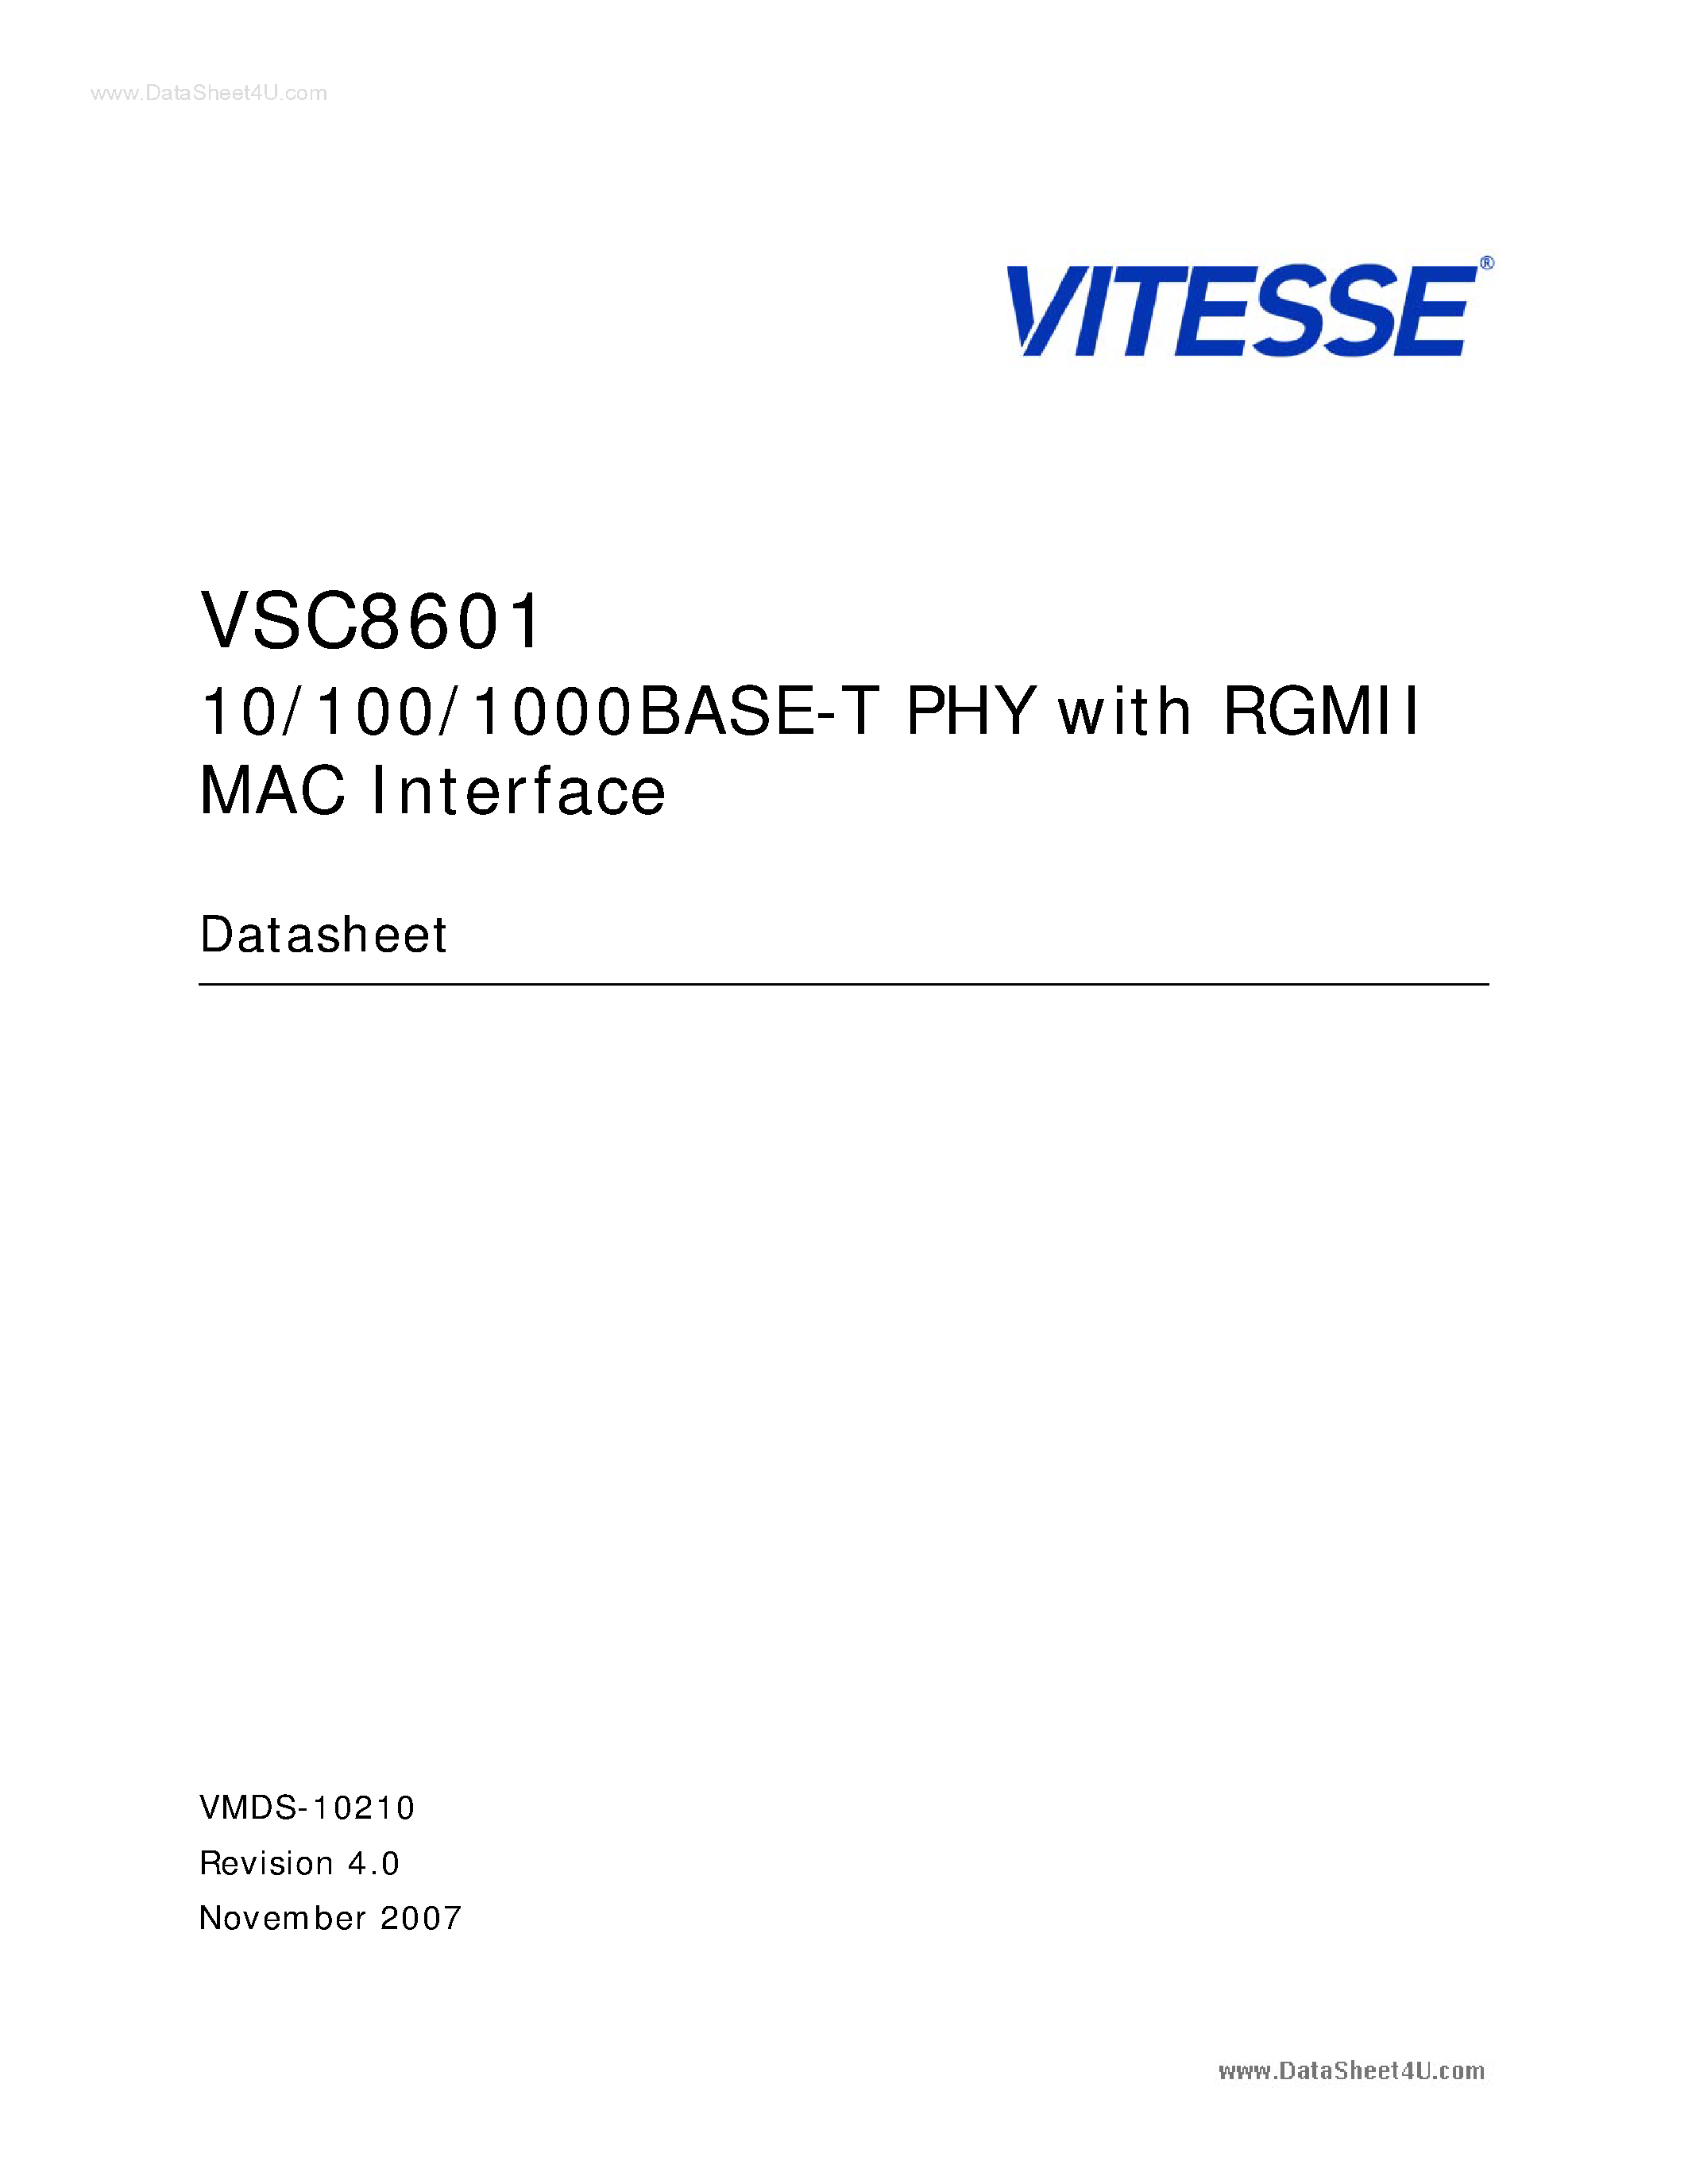 Даташит VSC8601 - 10/100/1000Base-T PHY страница 1